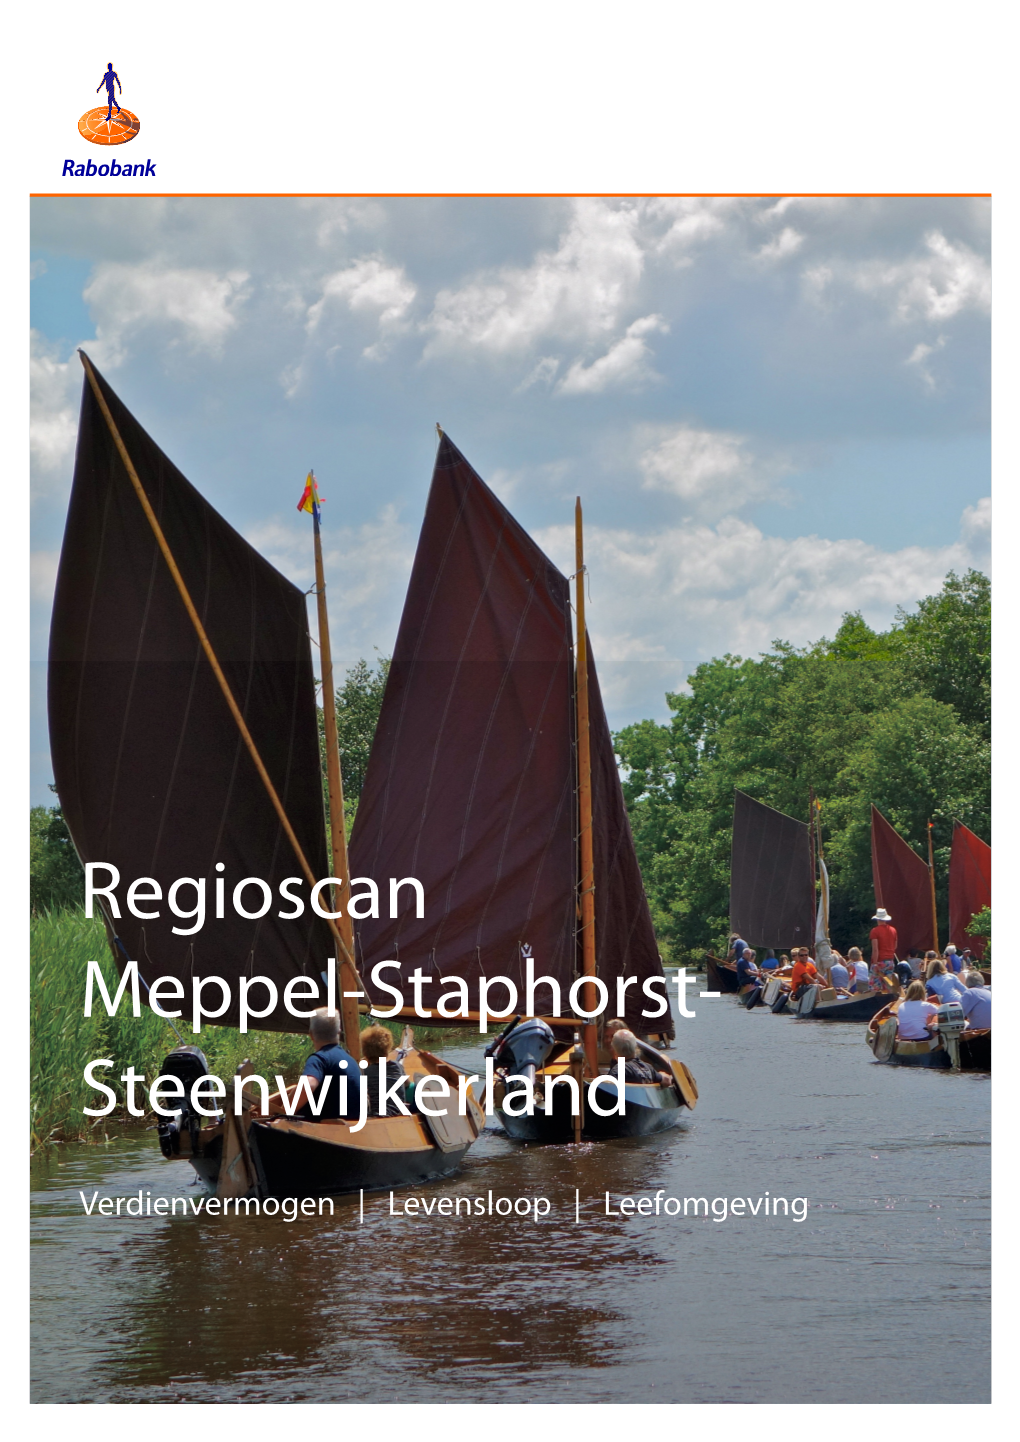 Regioscan Meppel-Staphorst- Steenwijkerland